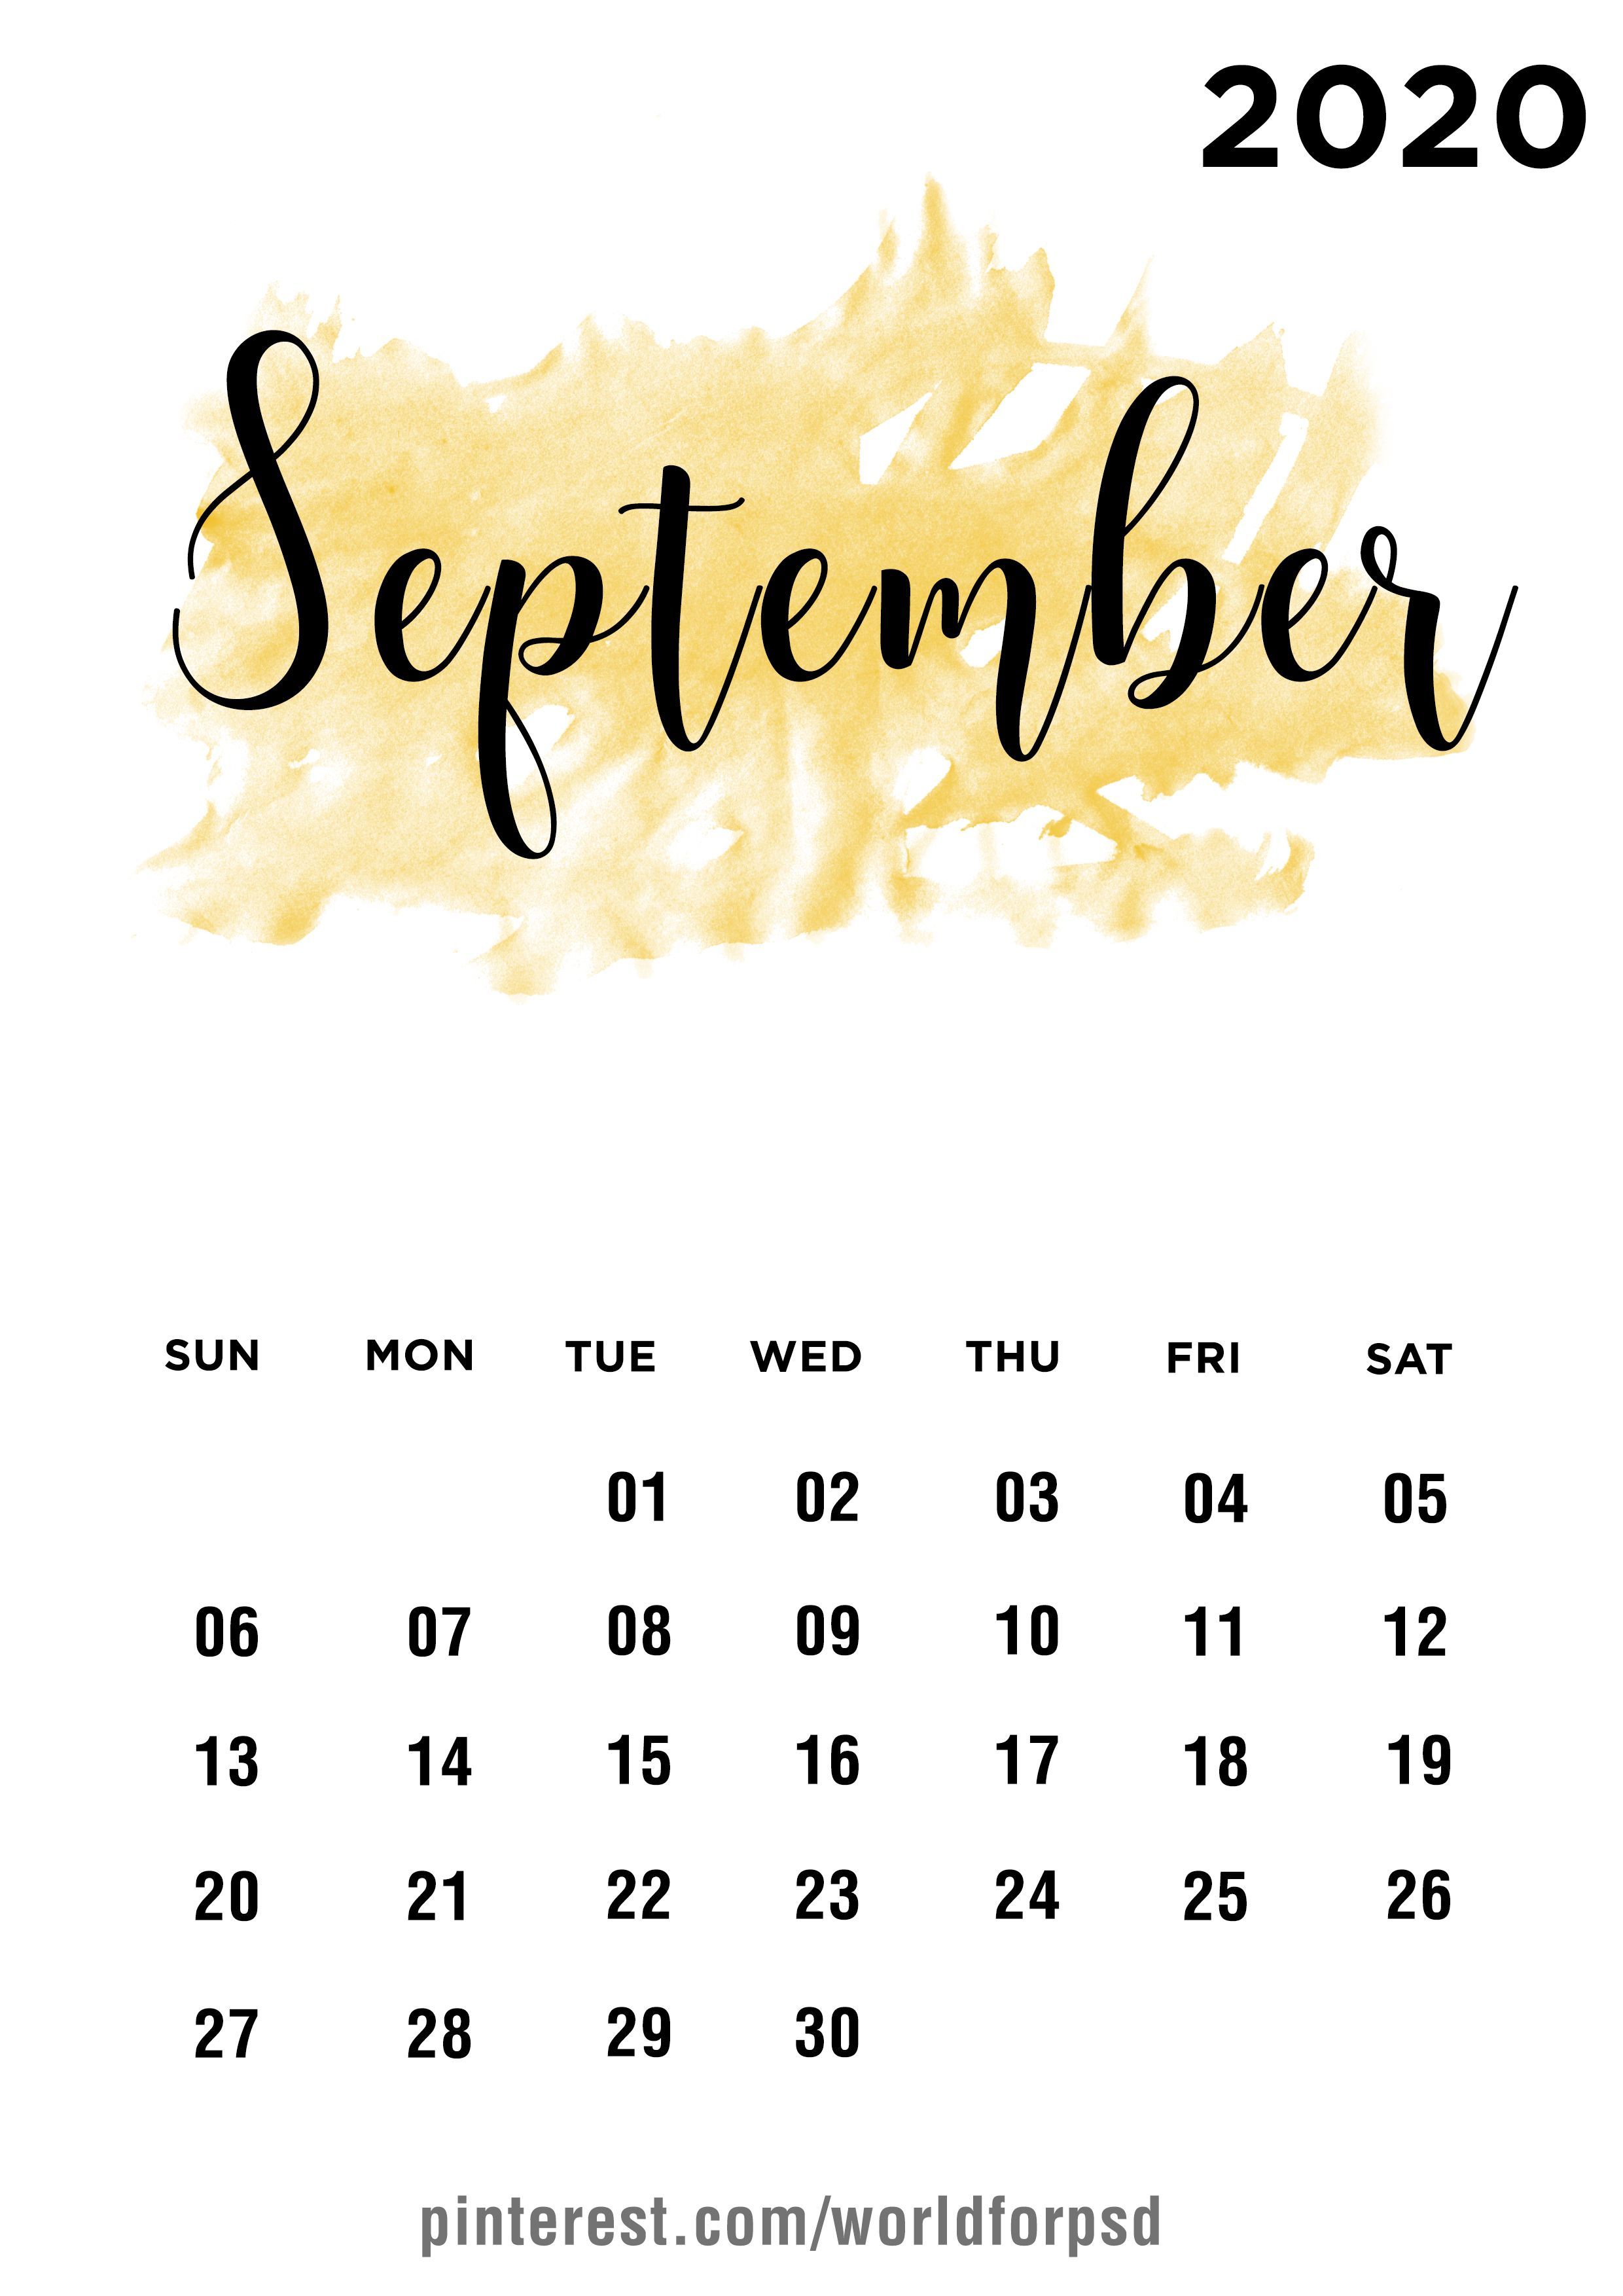 September 2020 Calendar. Calendar wallpaper, Calendar design